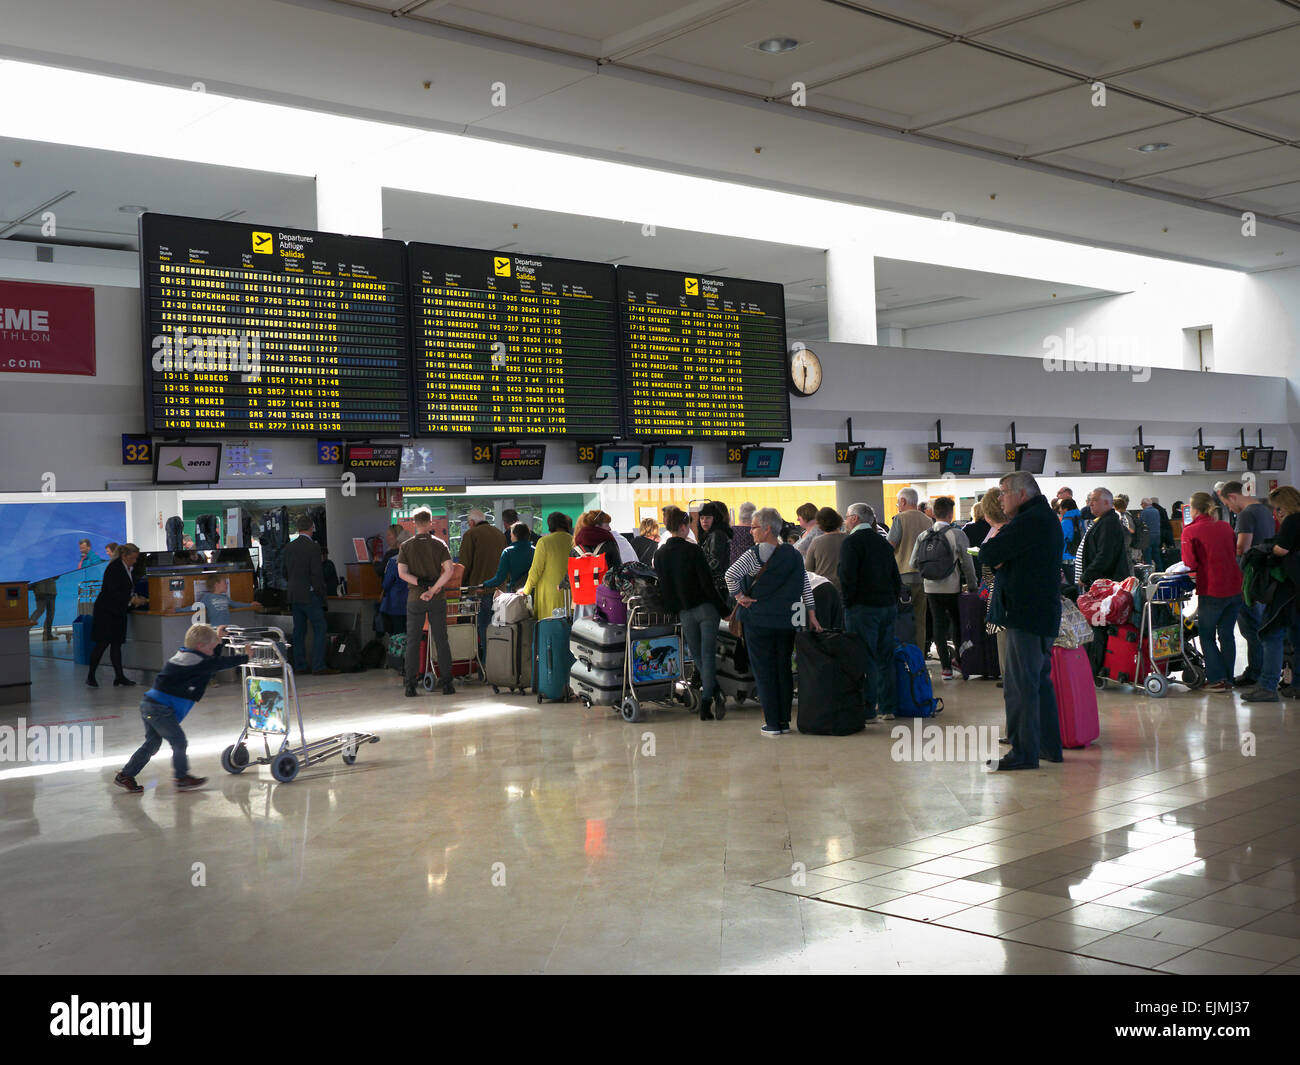 File d'attente de l'aéroport les passagers et les bagages des vols nolisés attendent au terminal de l'aéroport d'enregistrer leurs bagages sur leur vol en Espagne Banque D'Images